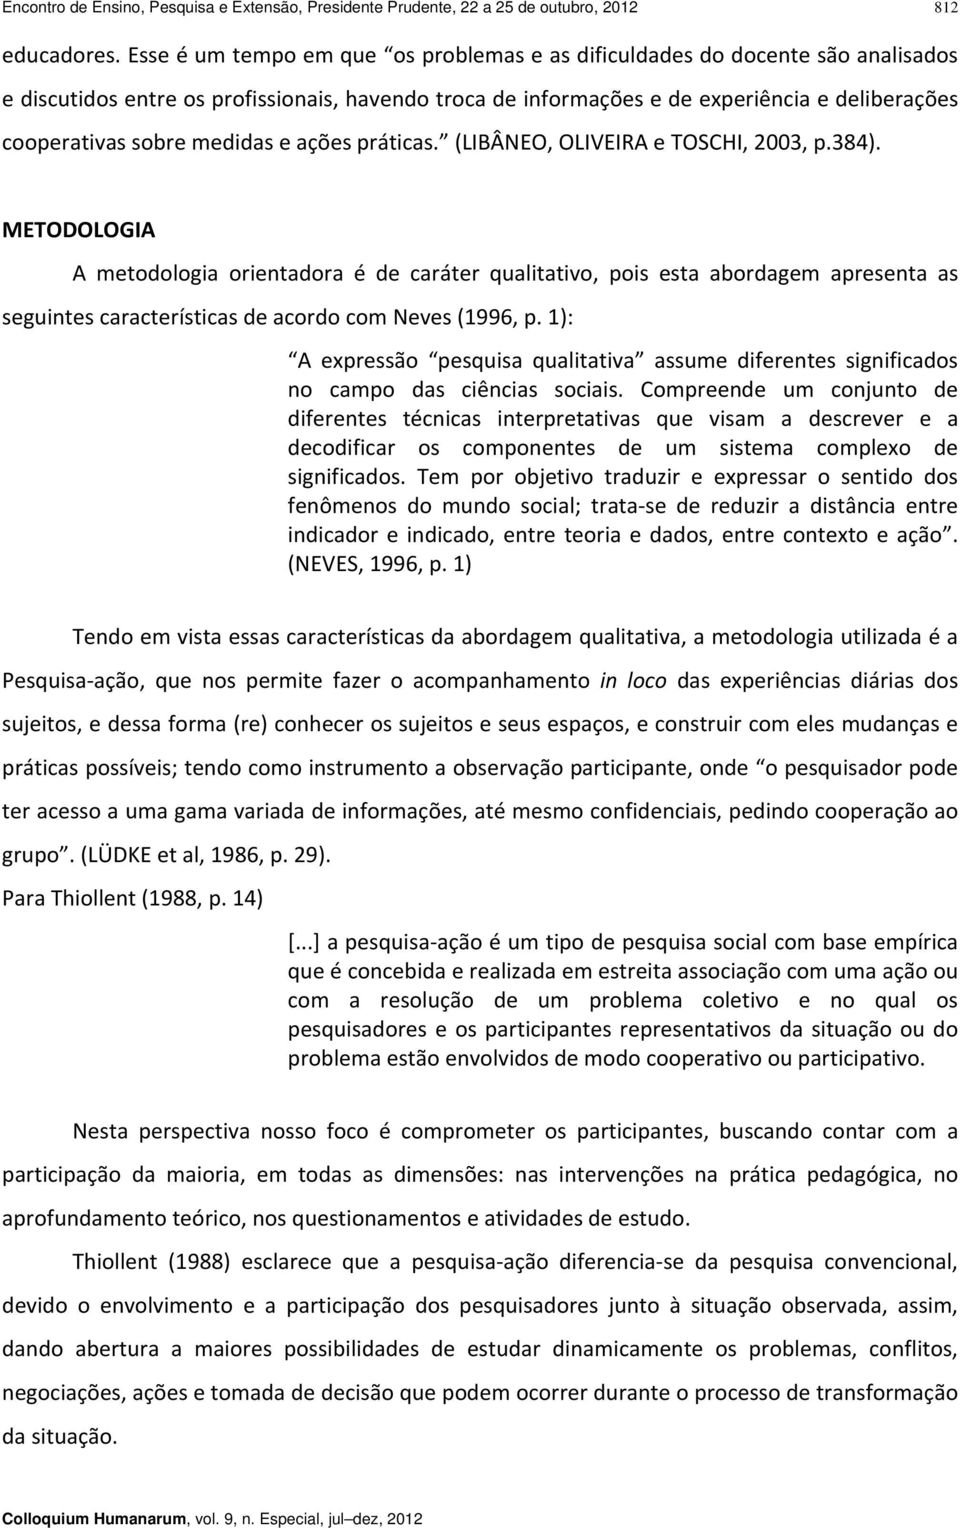 medidas e ações práticas. (LIBÂNEO, OLIVEIRA e TOSCHI, 2003, p.384).